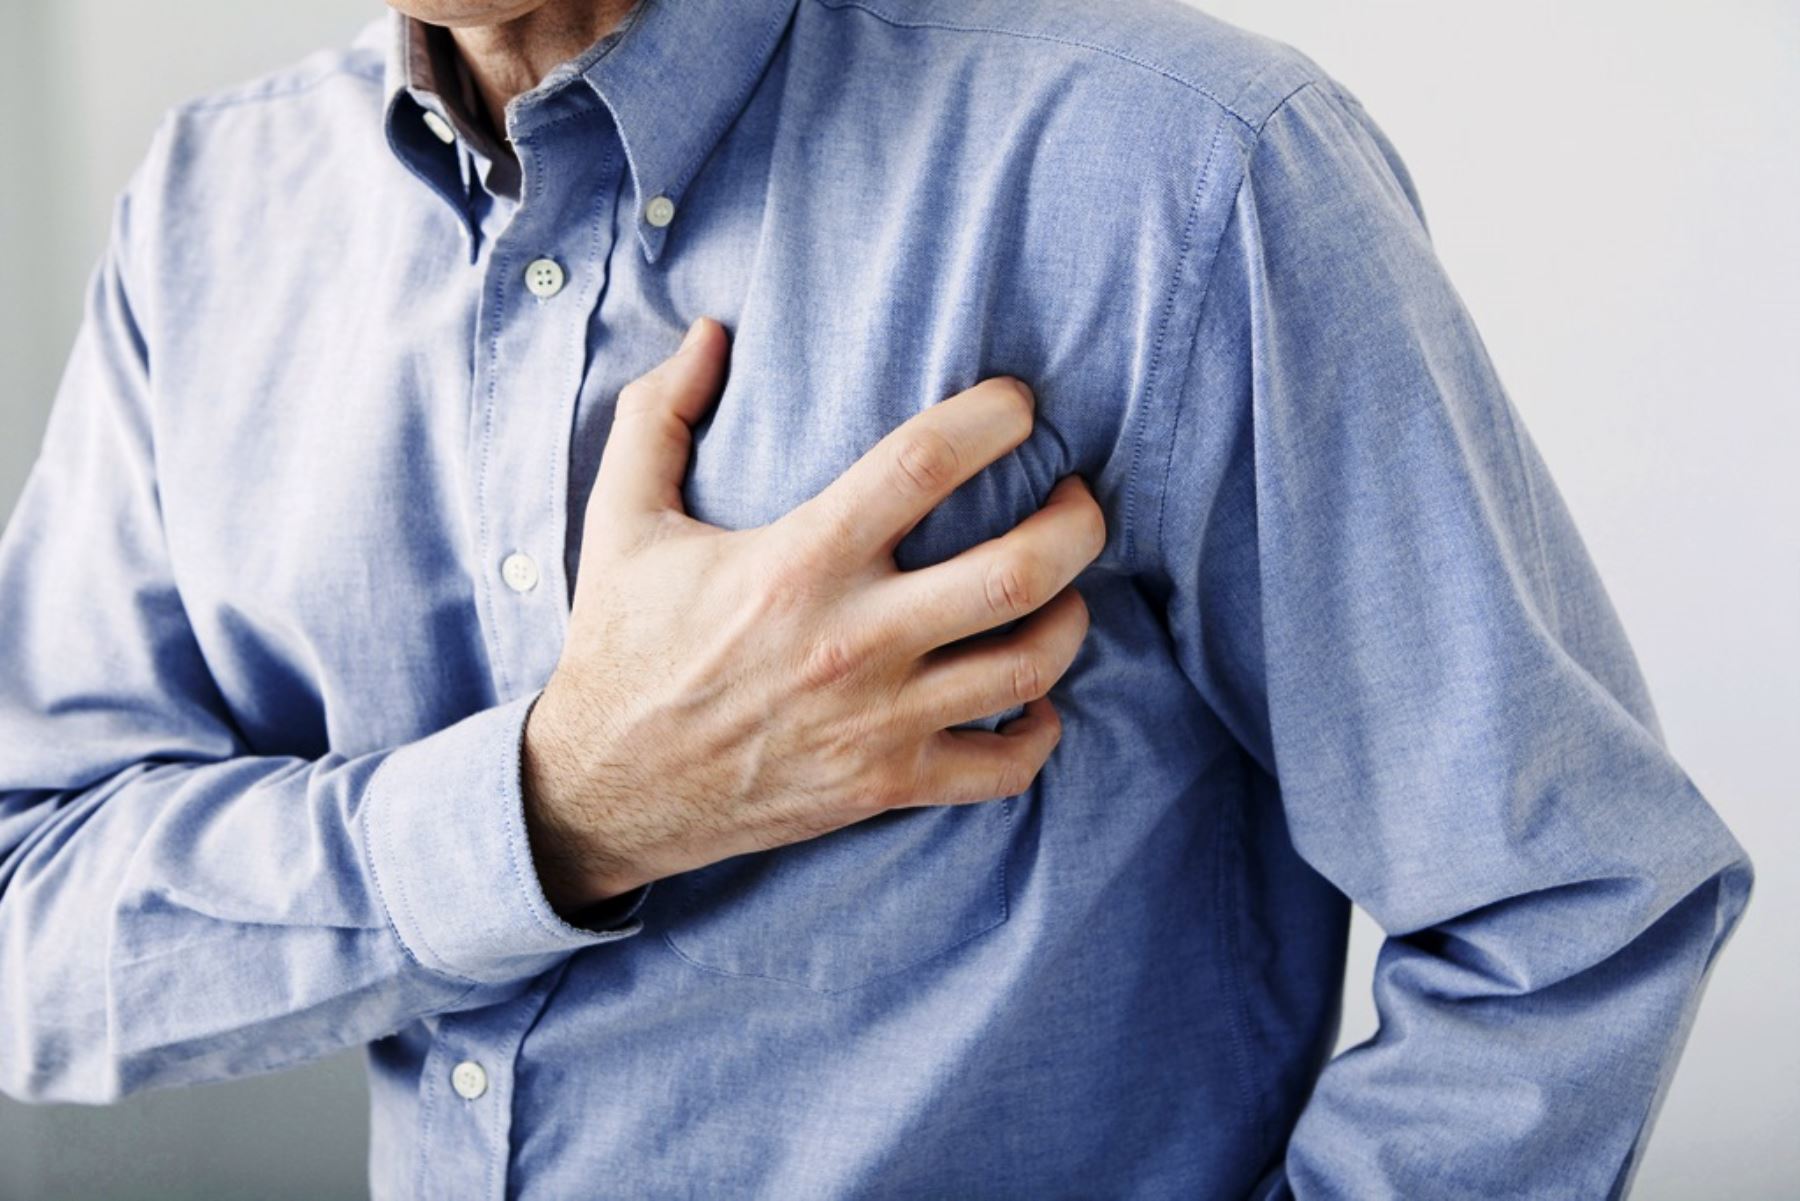 Los riesgos de sufrir un mal cardiaco se incrementan por una mala alimentación alta en gasas saturadas. Foto: ANDINA/Difusión.